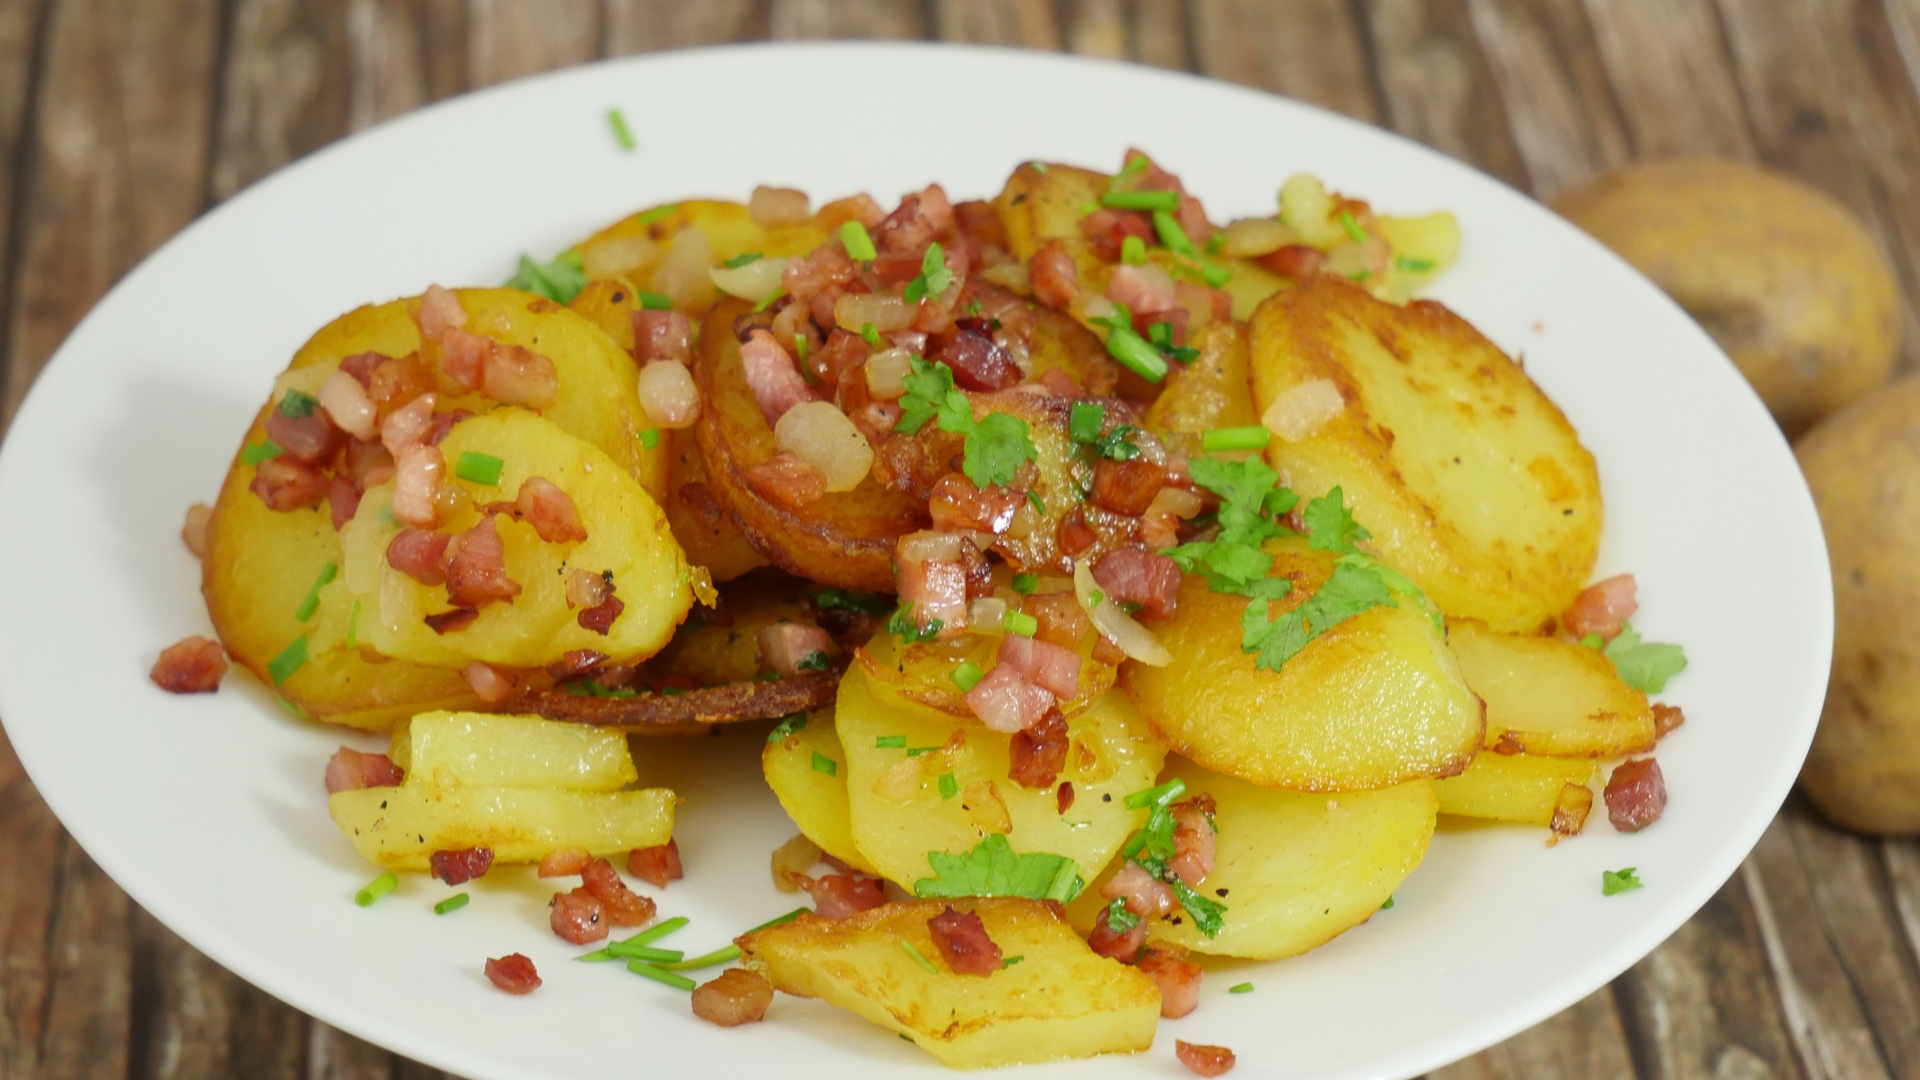 Rezept: Knusprige Bratkartoffeln aus gekochten Kartoffeln mit Speck ...